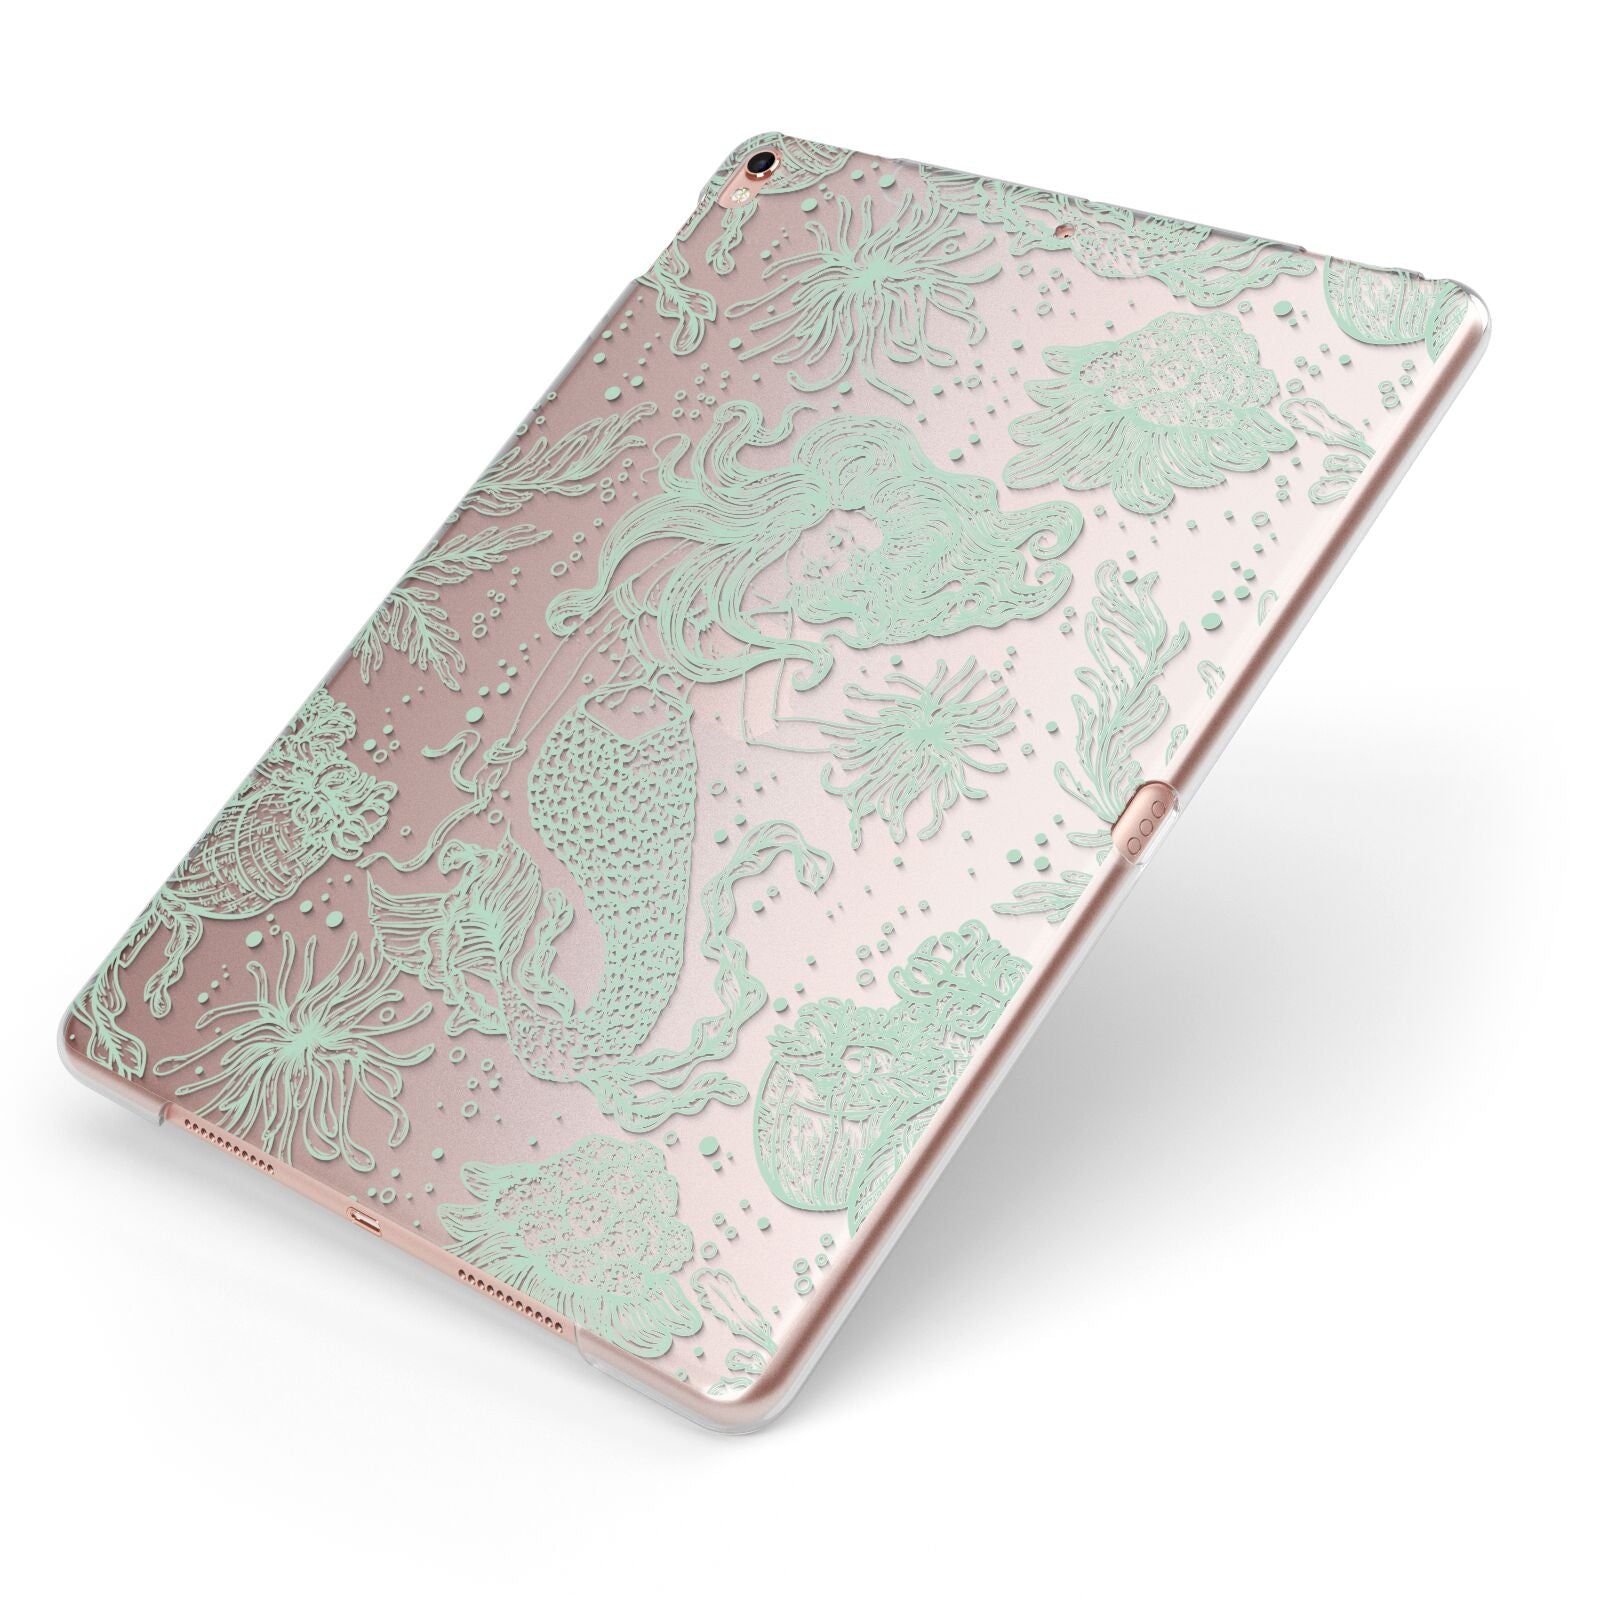 Sea Mermaid Apple iPad Case on Rose Gold iPad Side View